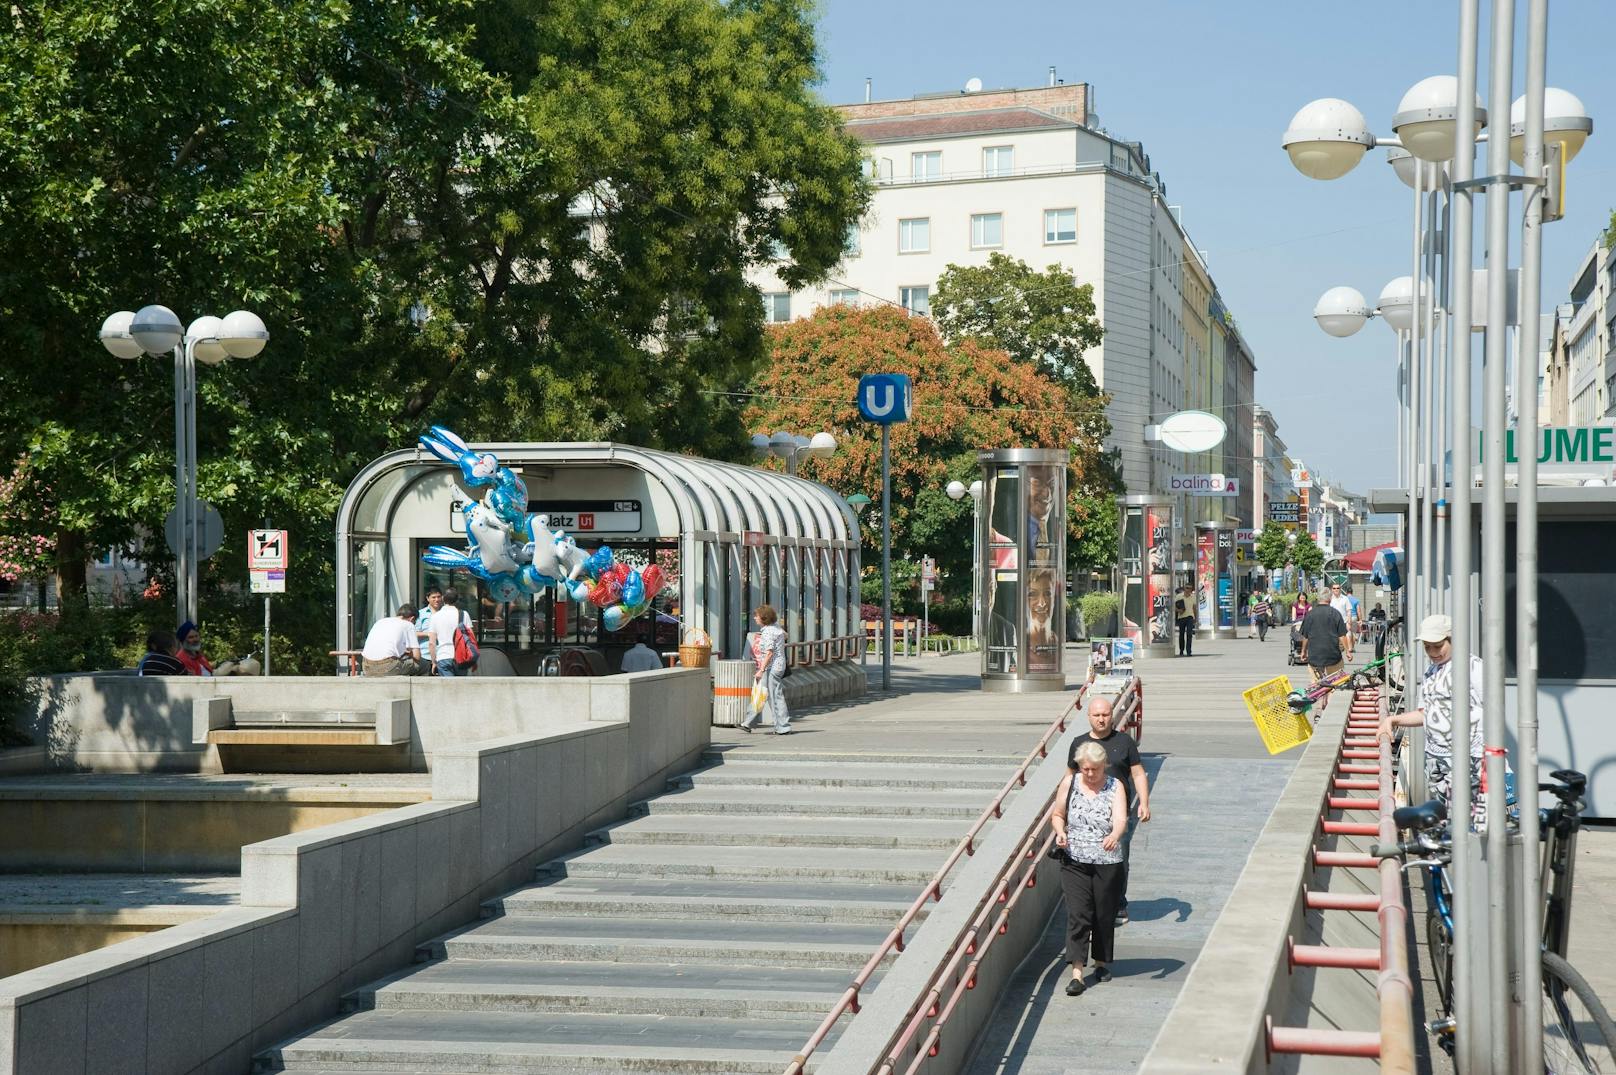 Fußgängerzone Favoriten mit U-Bahn-Station Keplerplatz. Symbolbild